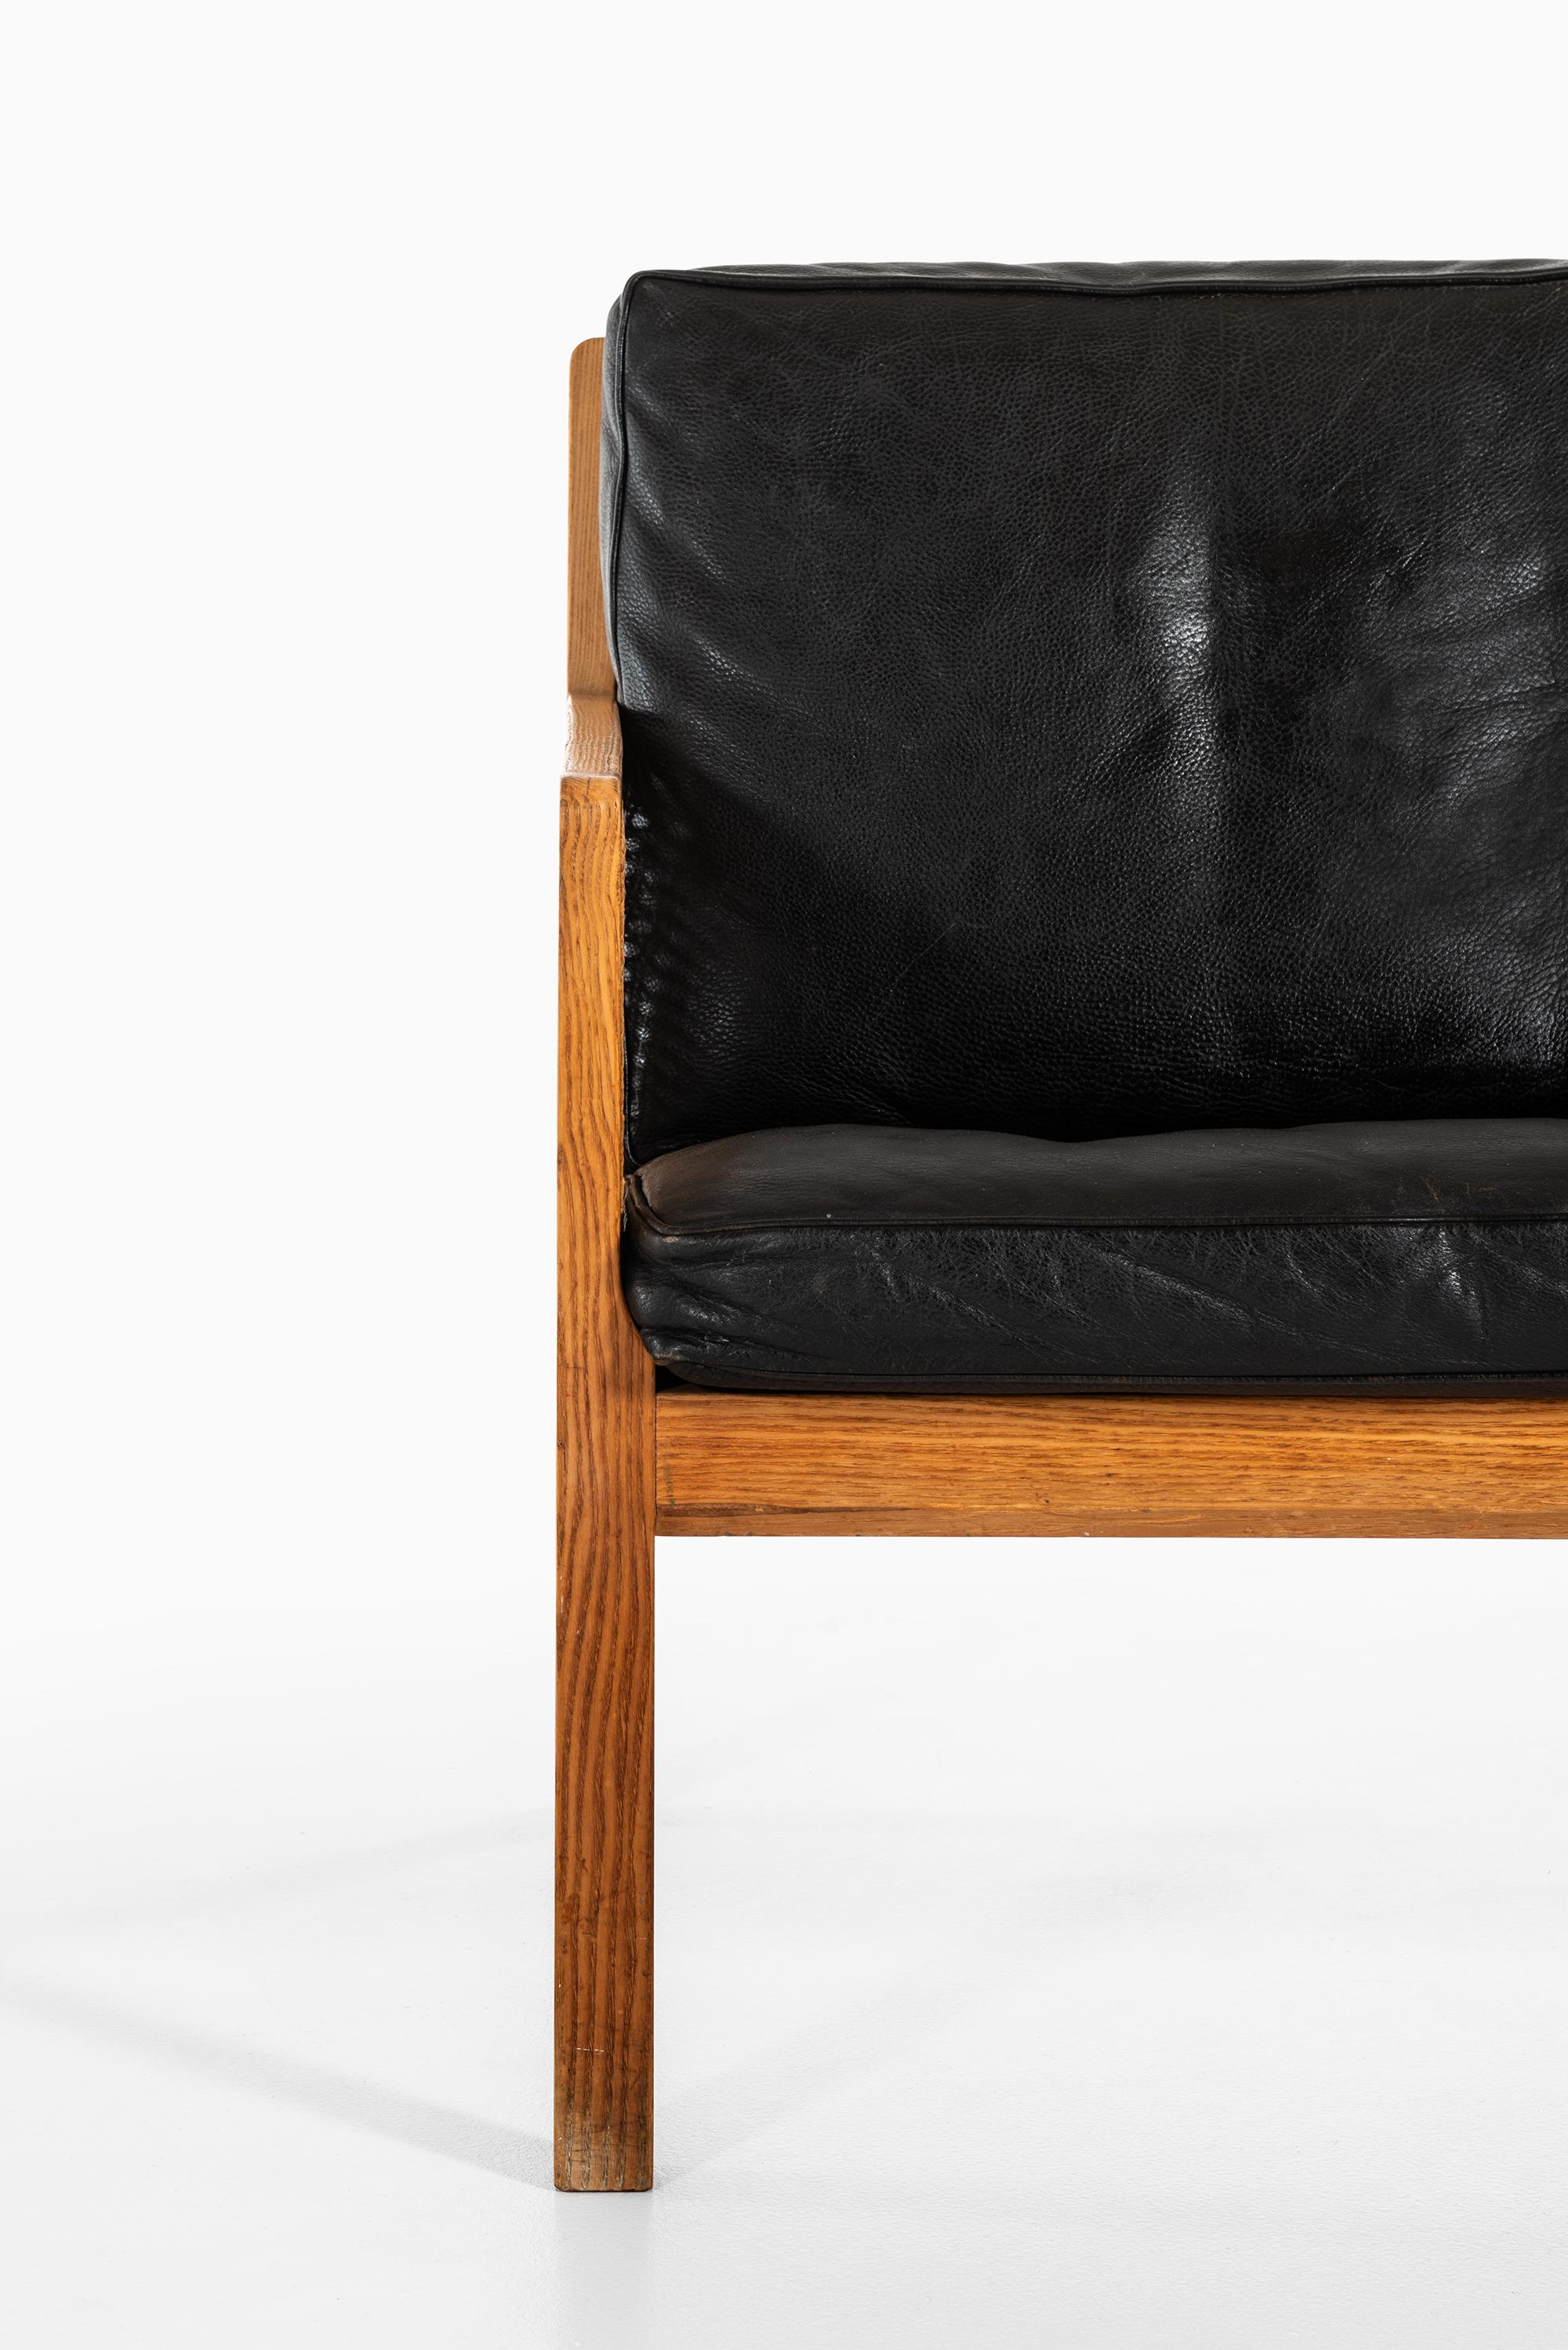 Sehr seltenes Sofa, entworfen von Bernt Petersen. Produziert von Wørts Møbelsnedkeri in Dänemark. Ein Sessel ist ebenfalls verfügbar.